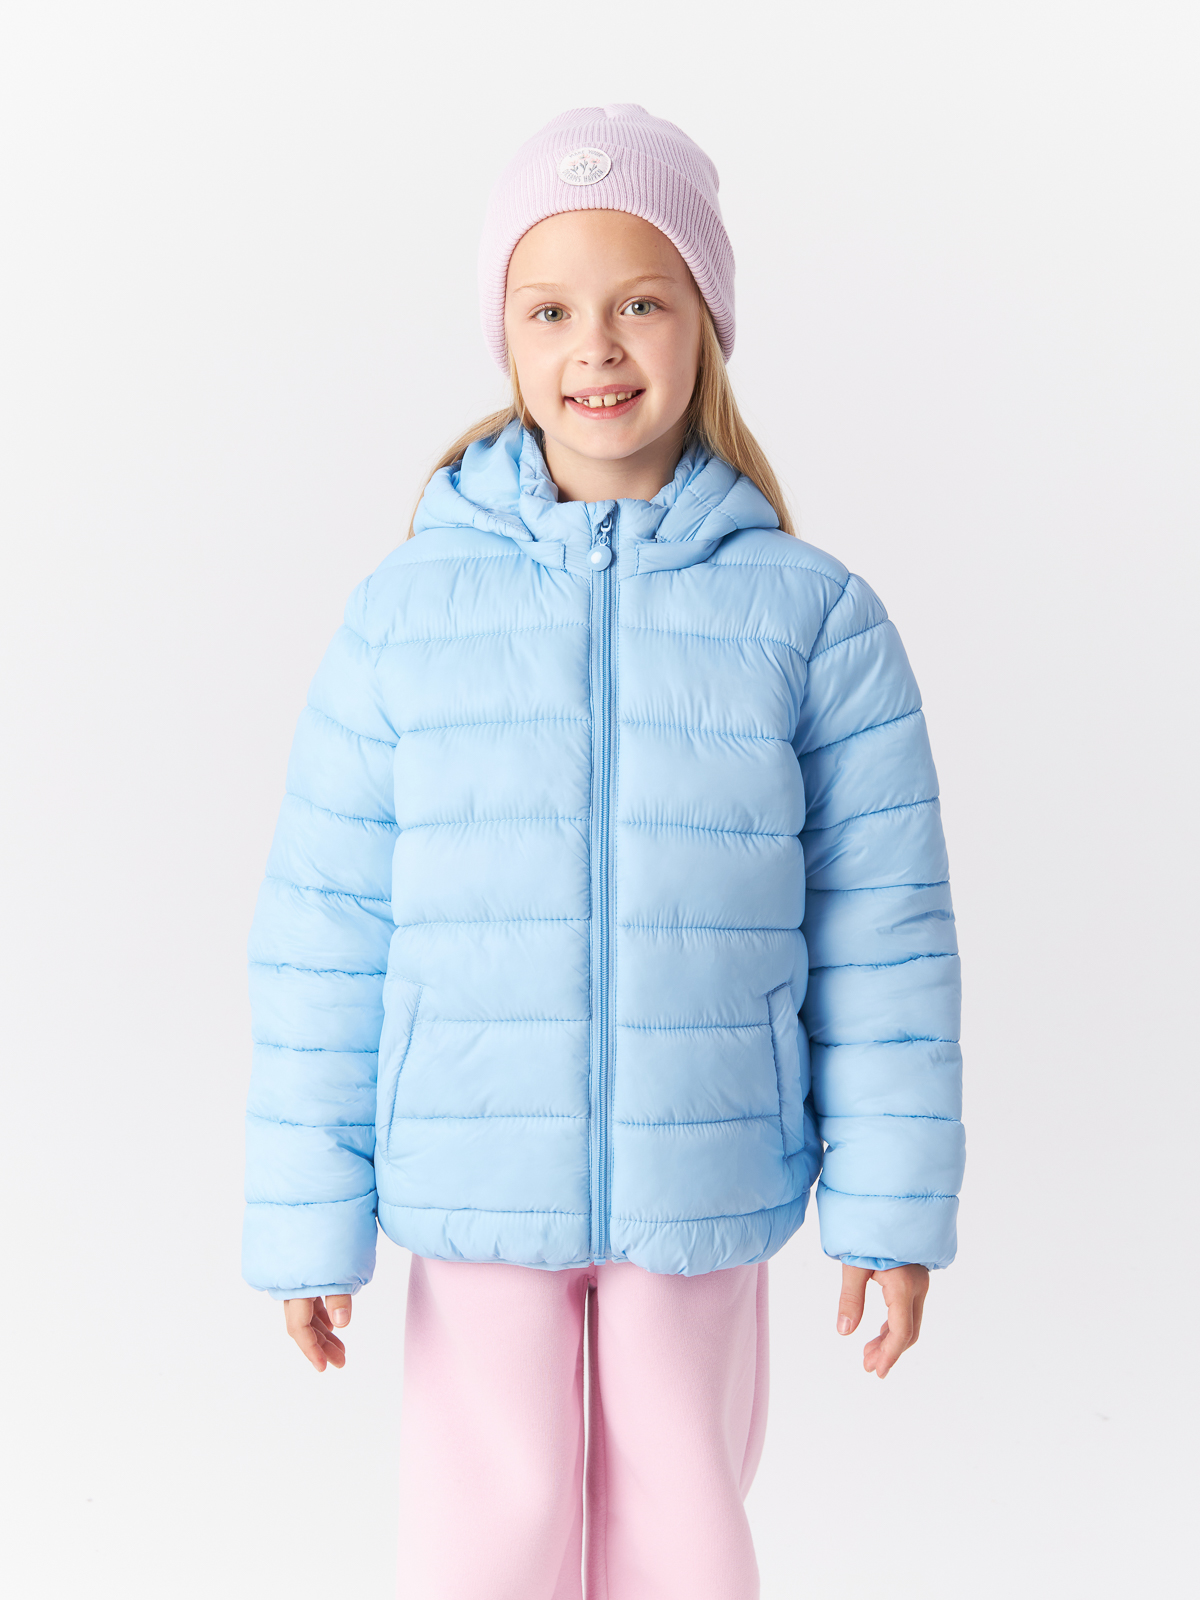 Куртка Mcstyles для девочки, размер 134, SMM14, голубая